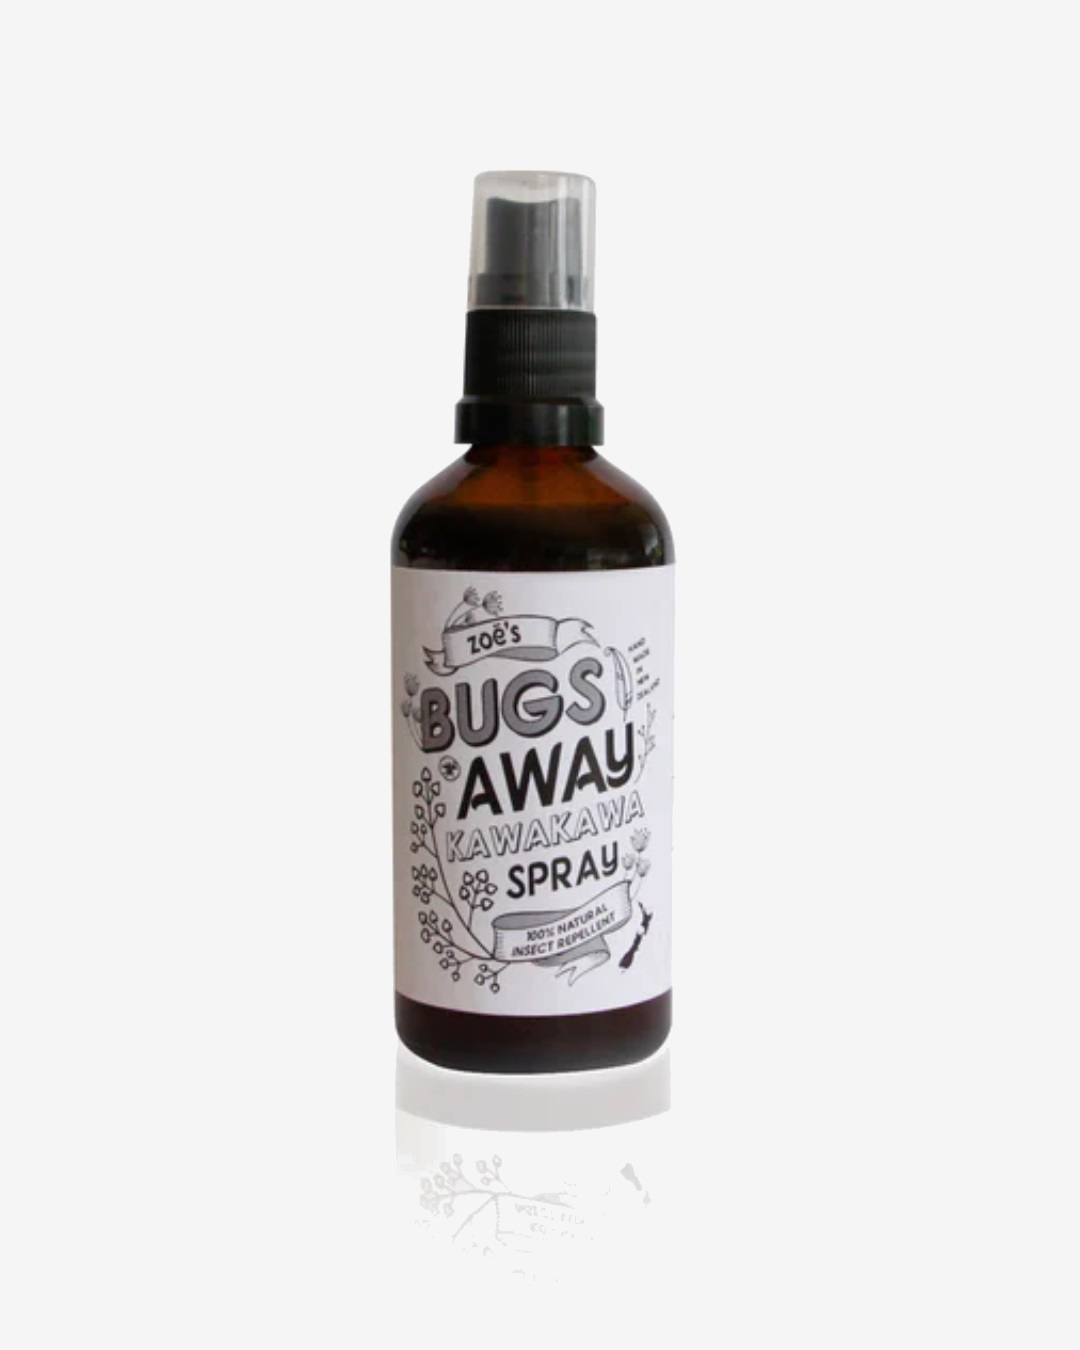 Spray bottle bugs away